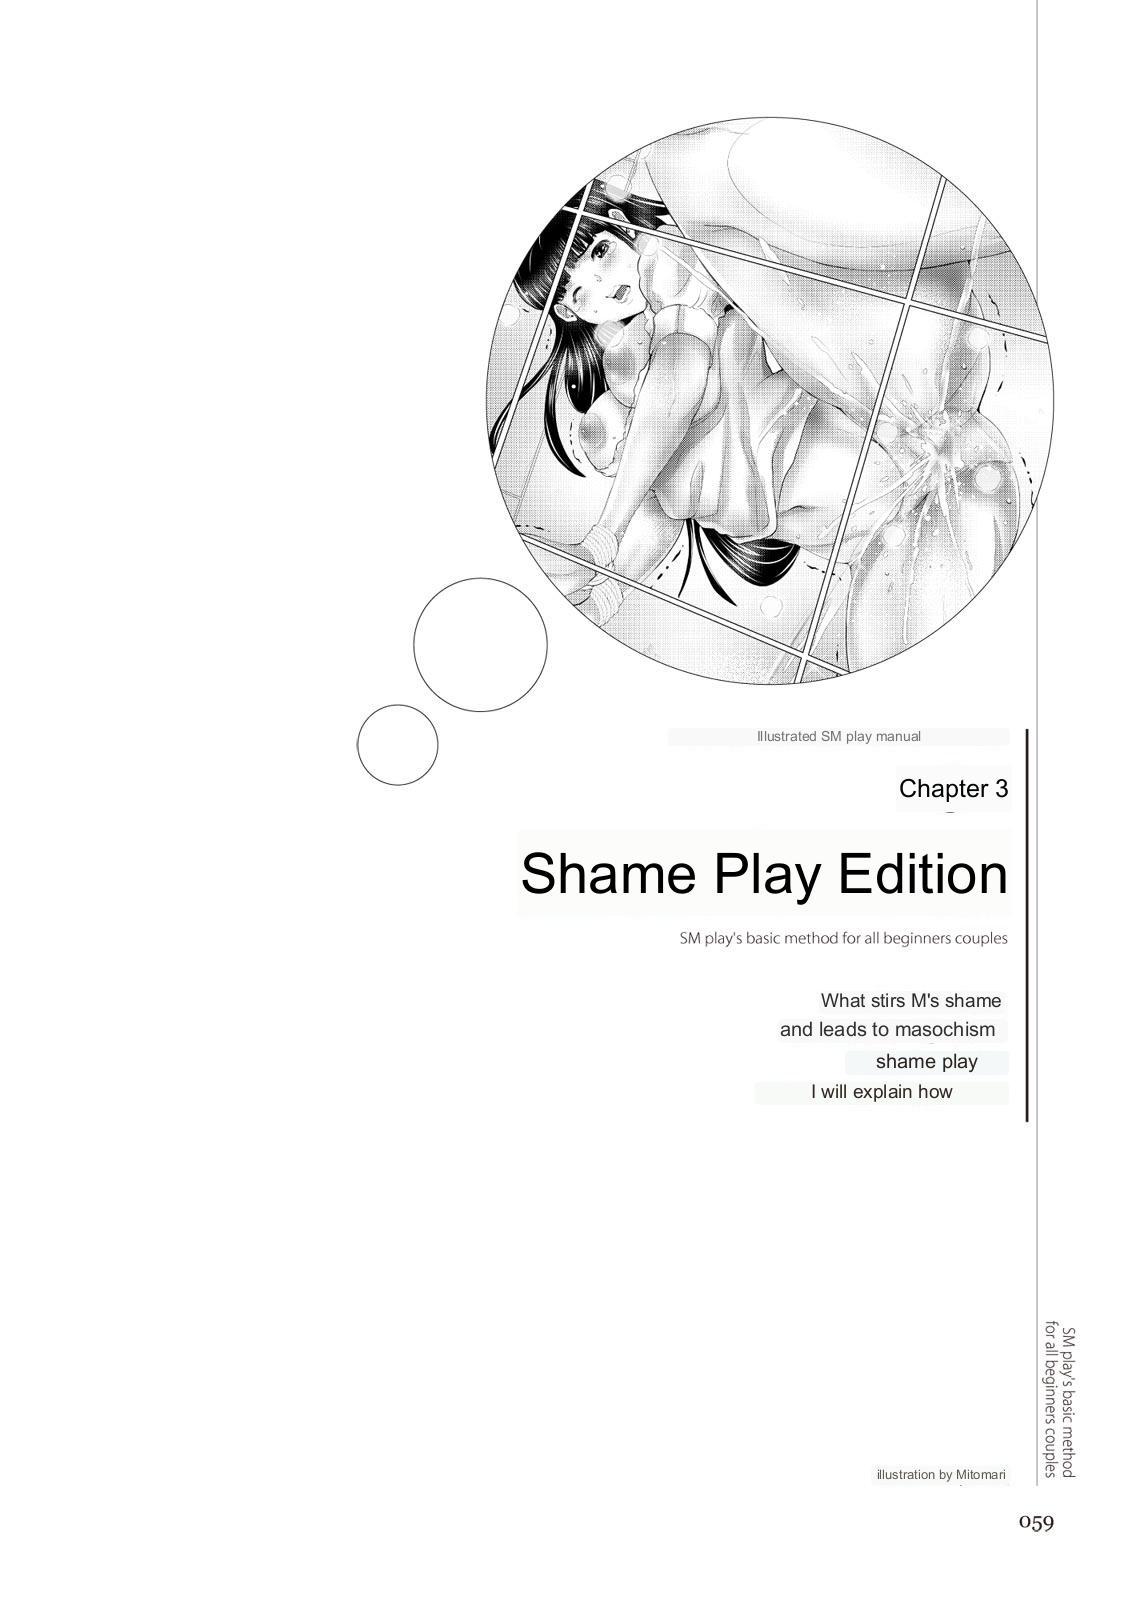 SM play manual 57